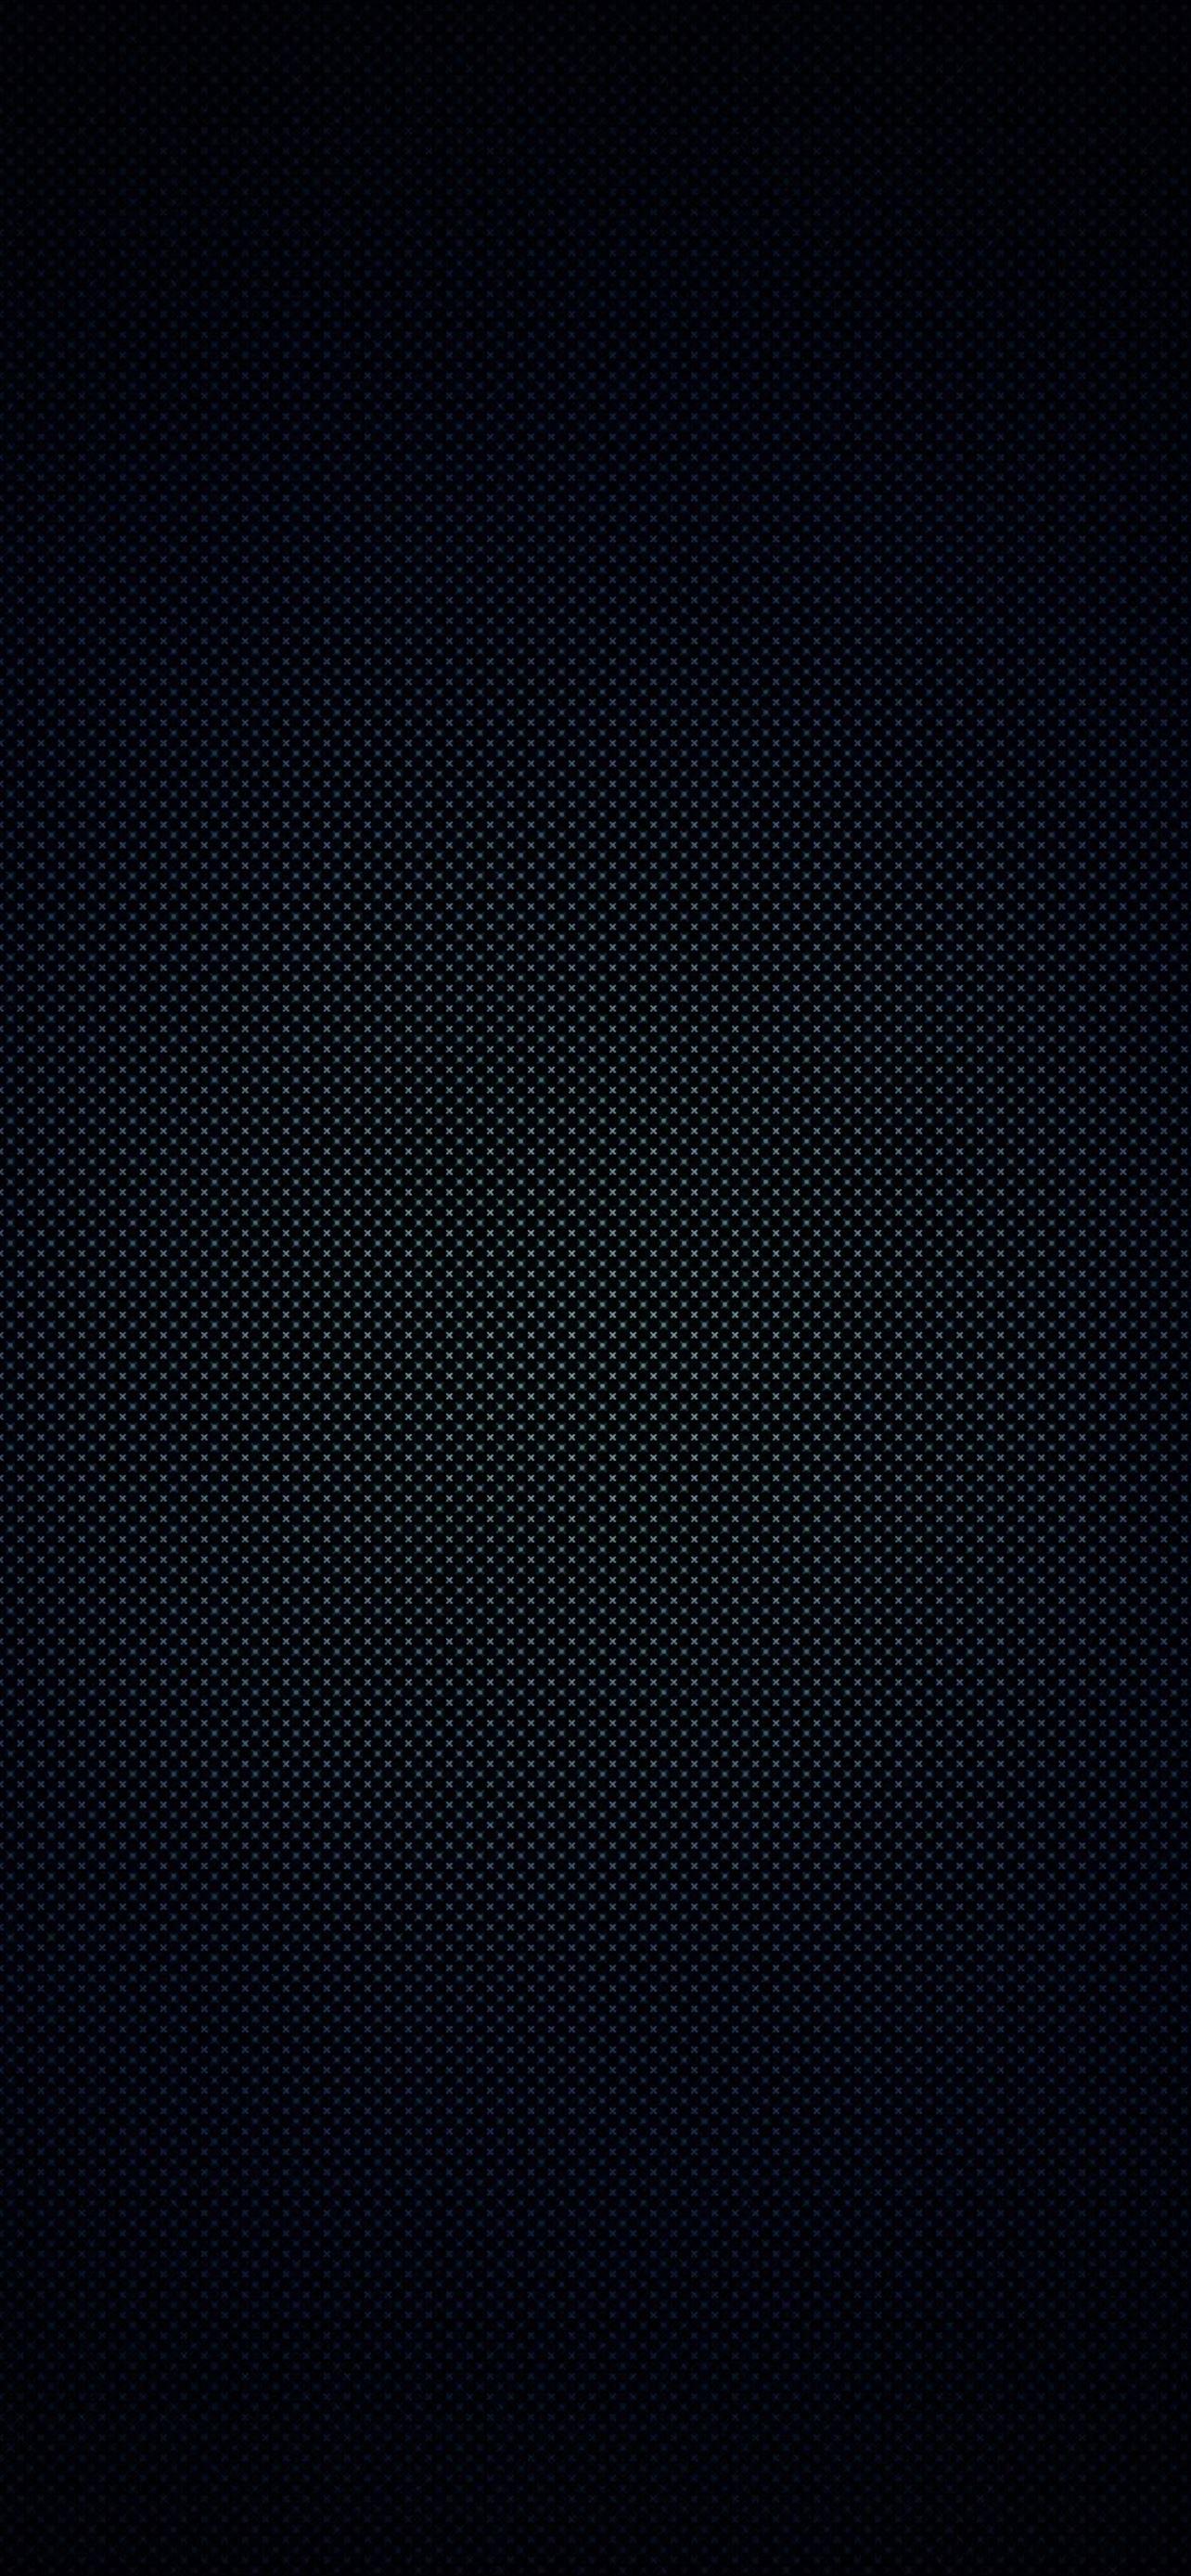 Dark Texture iPhone Wallpaper